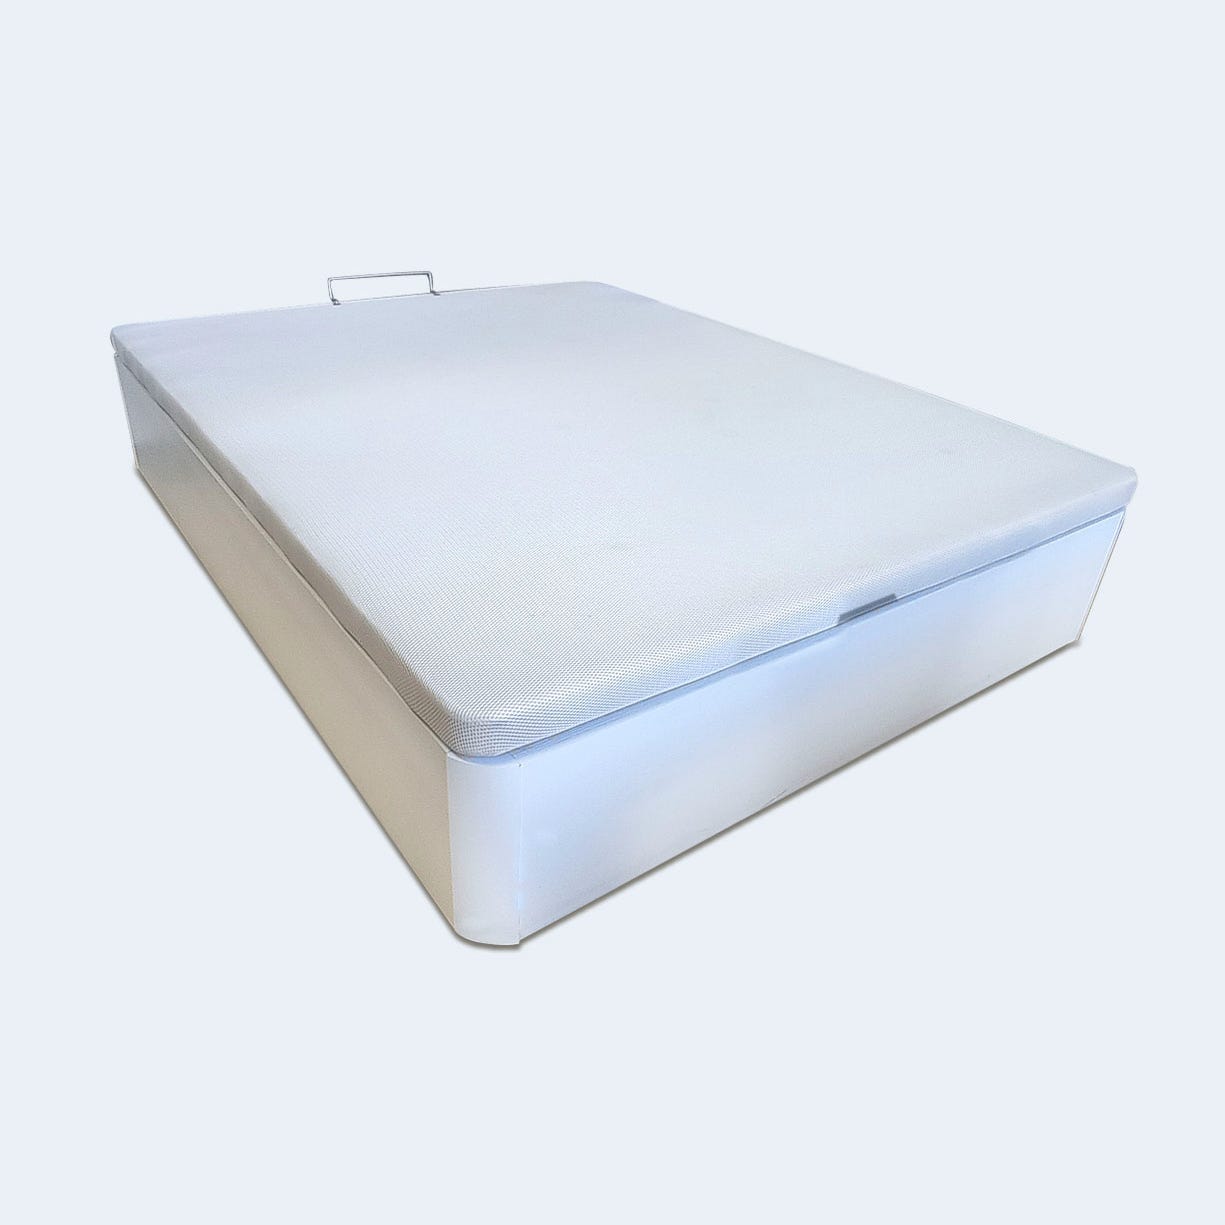 Canapé Abatible con Tapa 3D de 150x190 cm